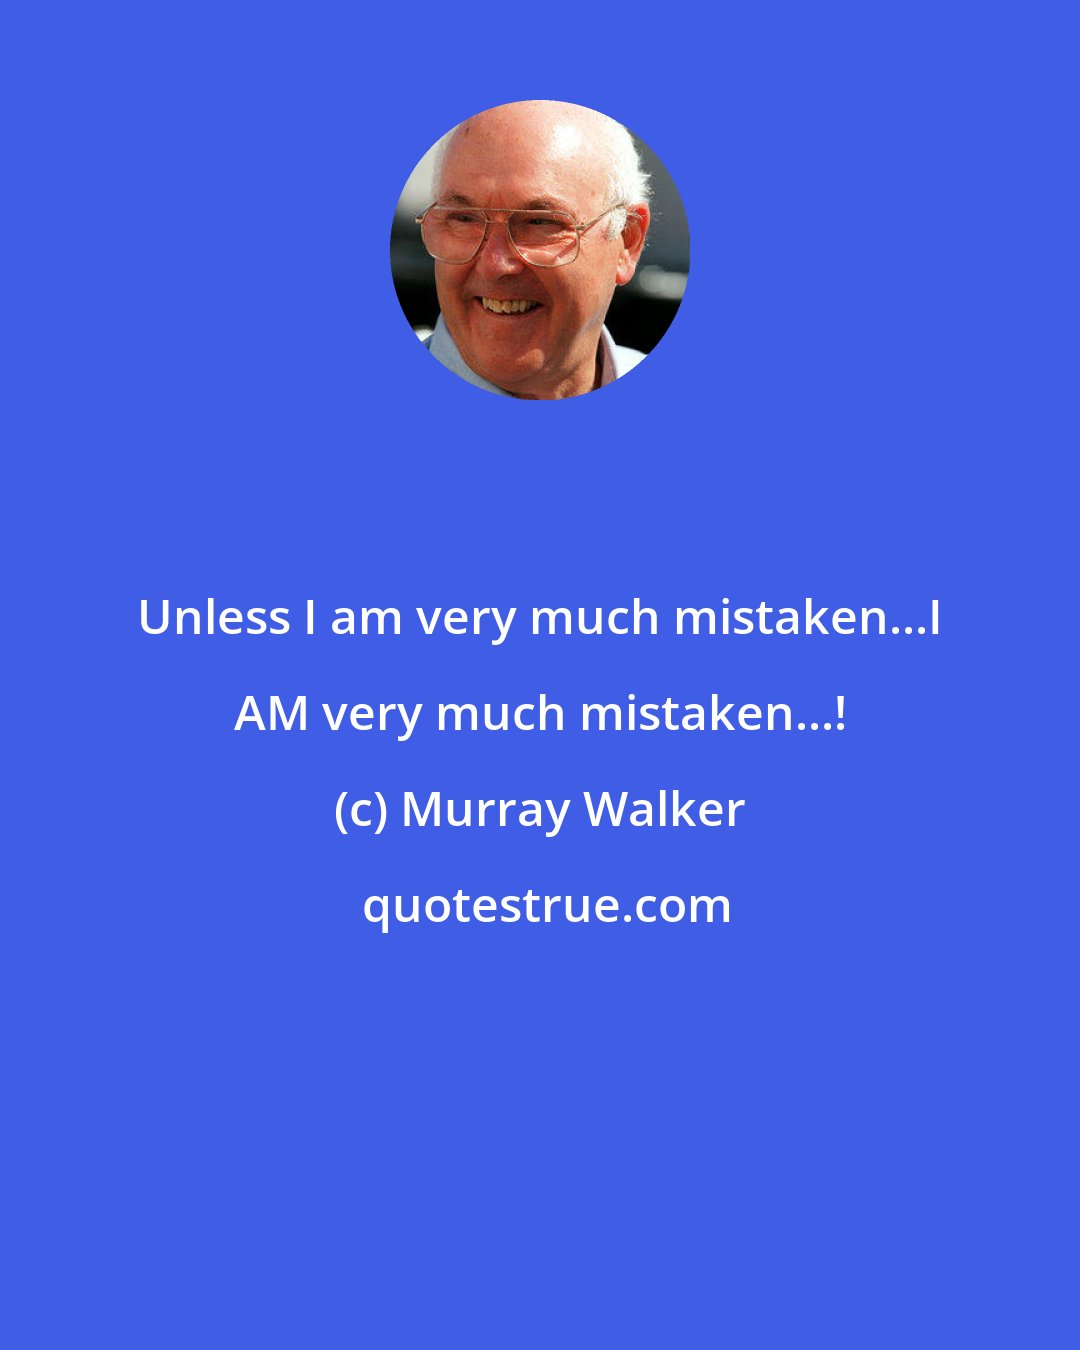 Murray Walker: Unless I am very much mistaken...I AM very much mistaken...!